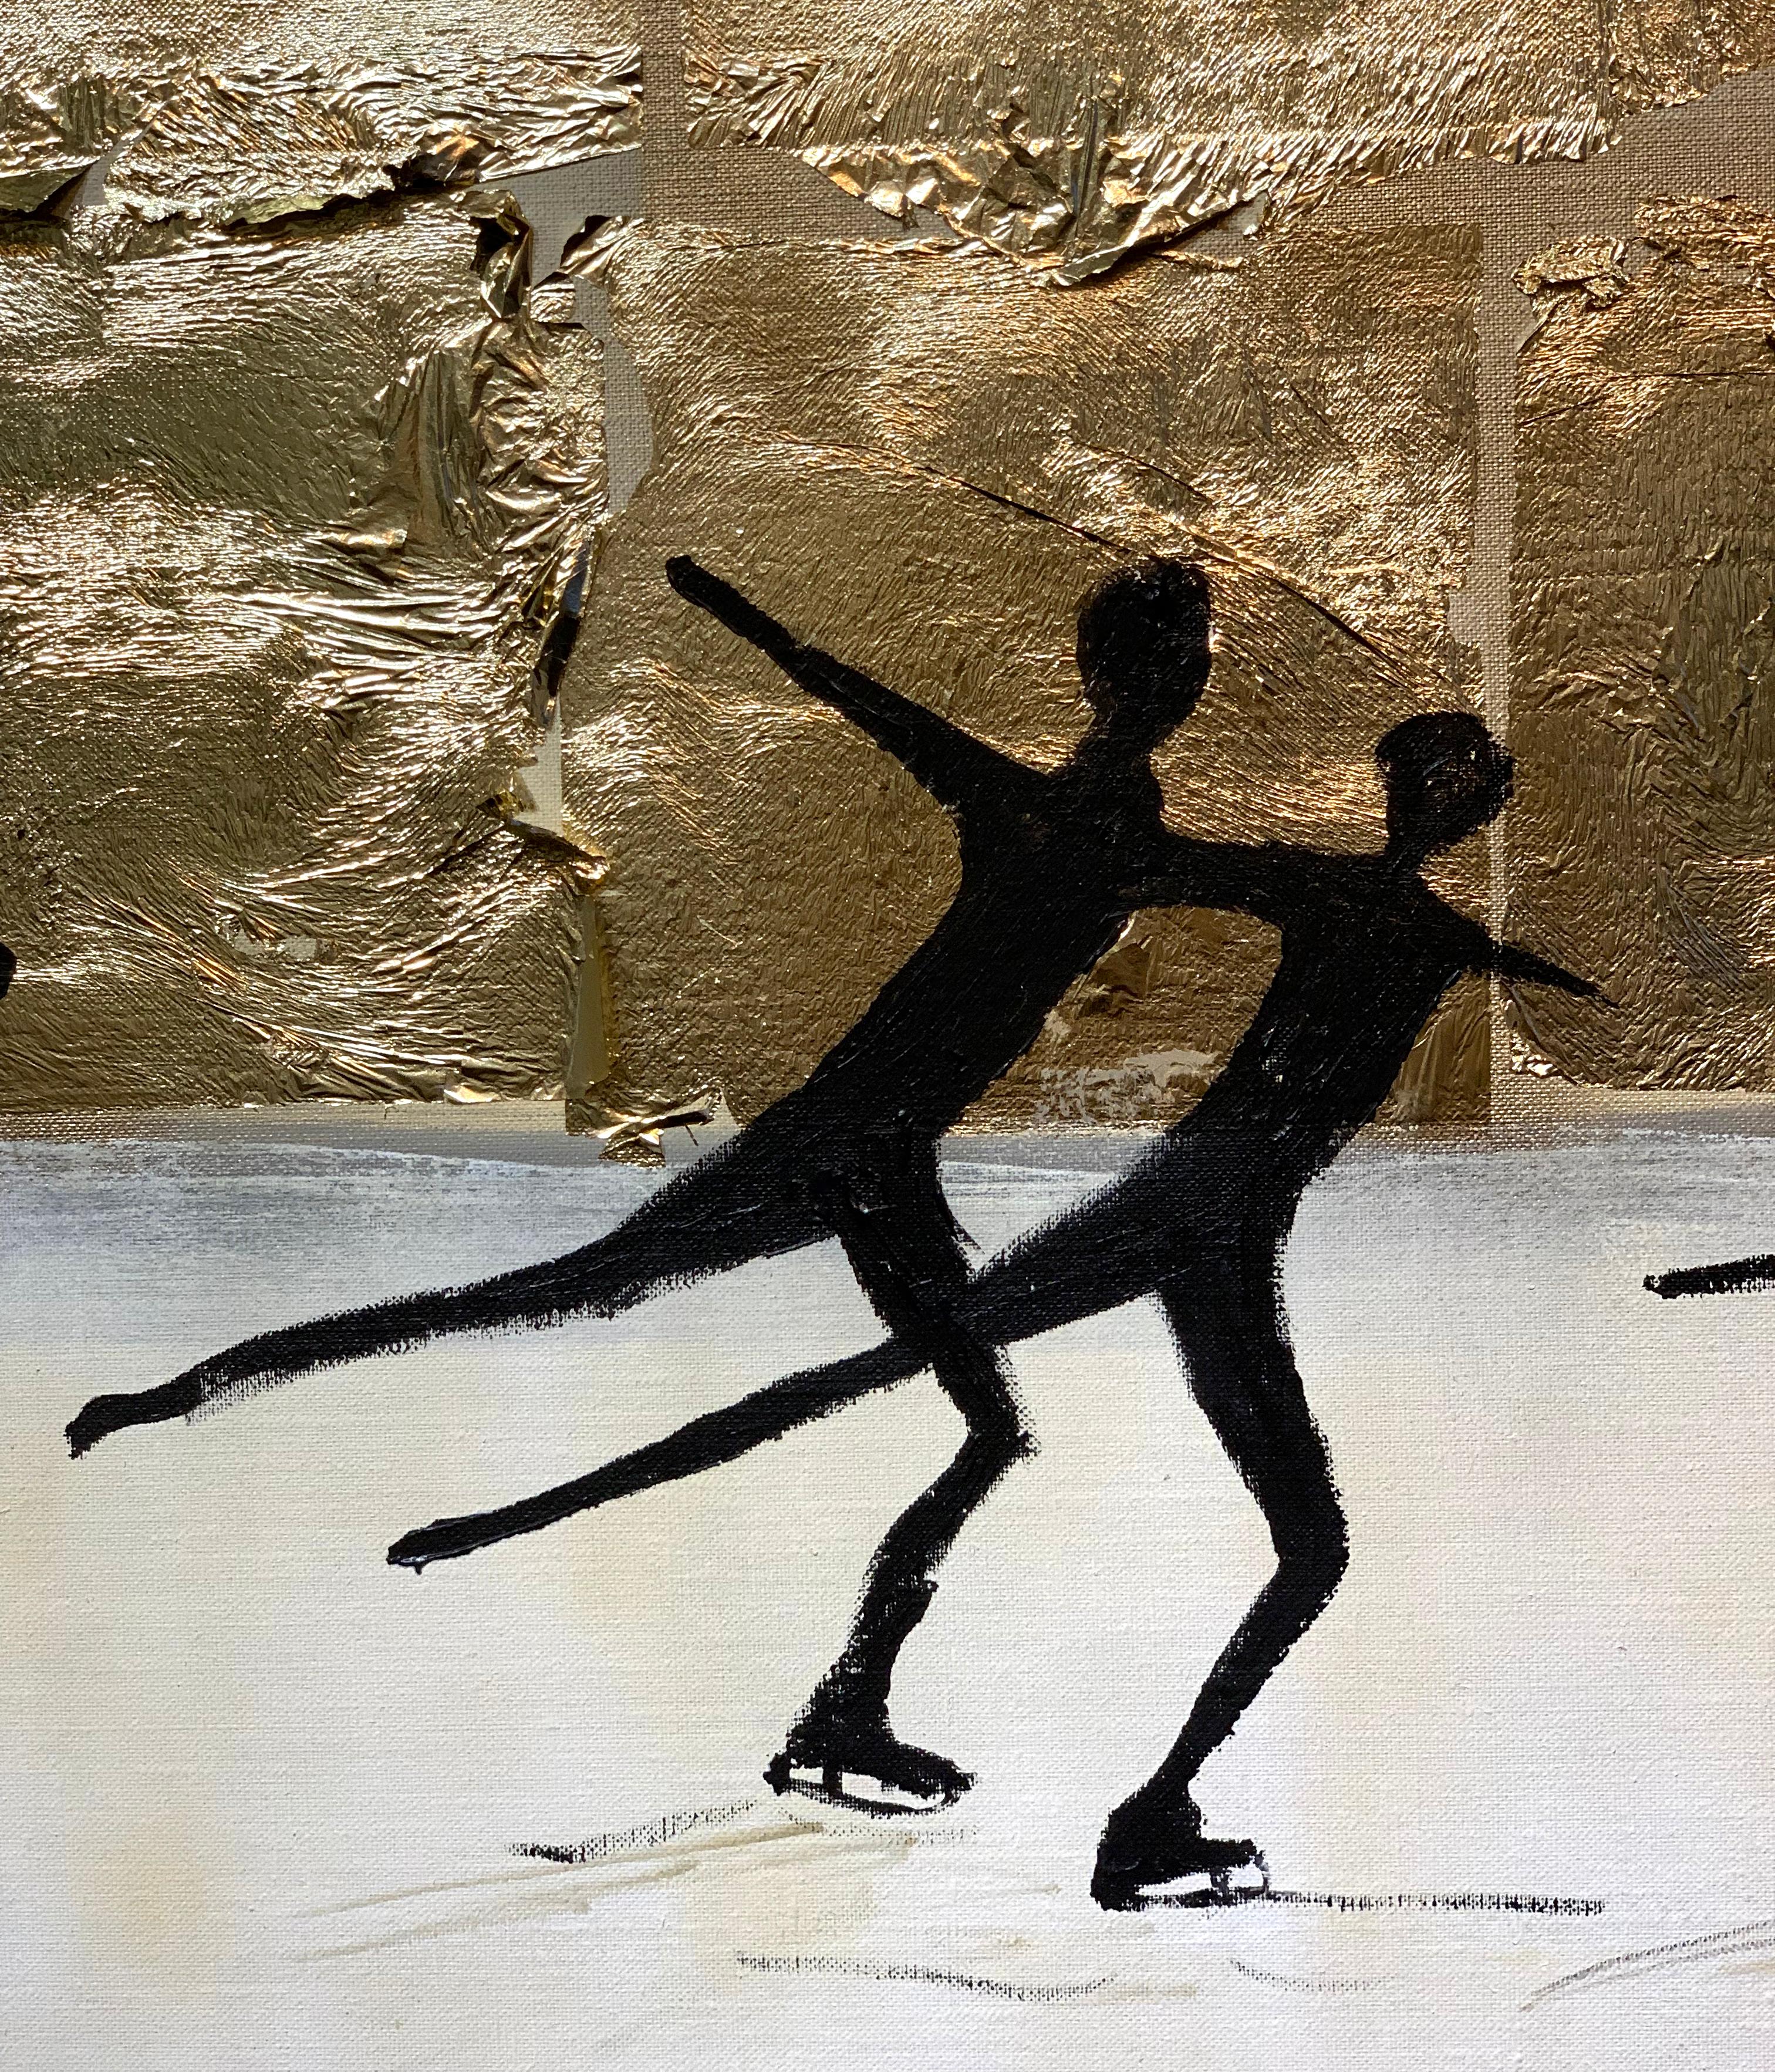 Dancing on Ice von K. Hormel - Gold Zeitgenössisches abstraktes Ölgemälde (Braun), Abstract Painting, von Katharina Hormel